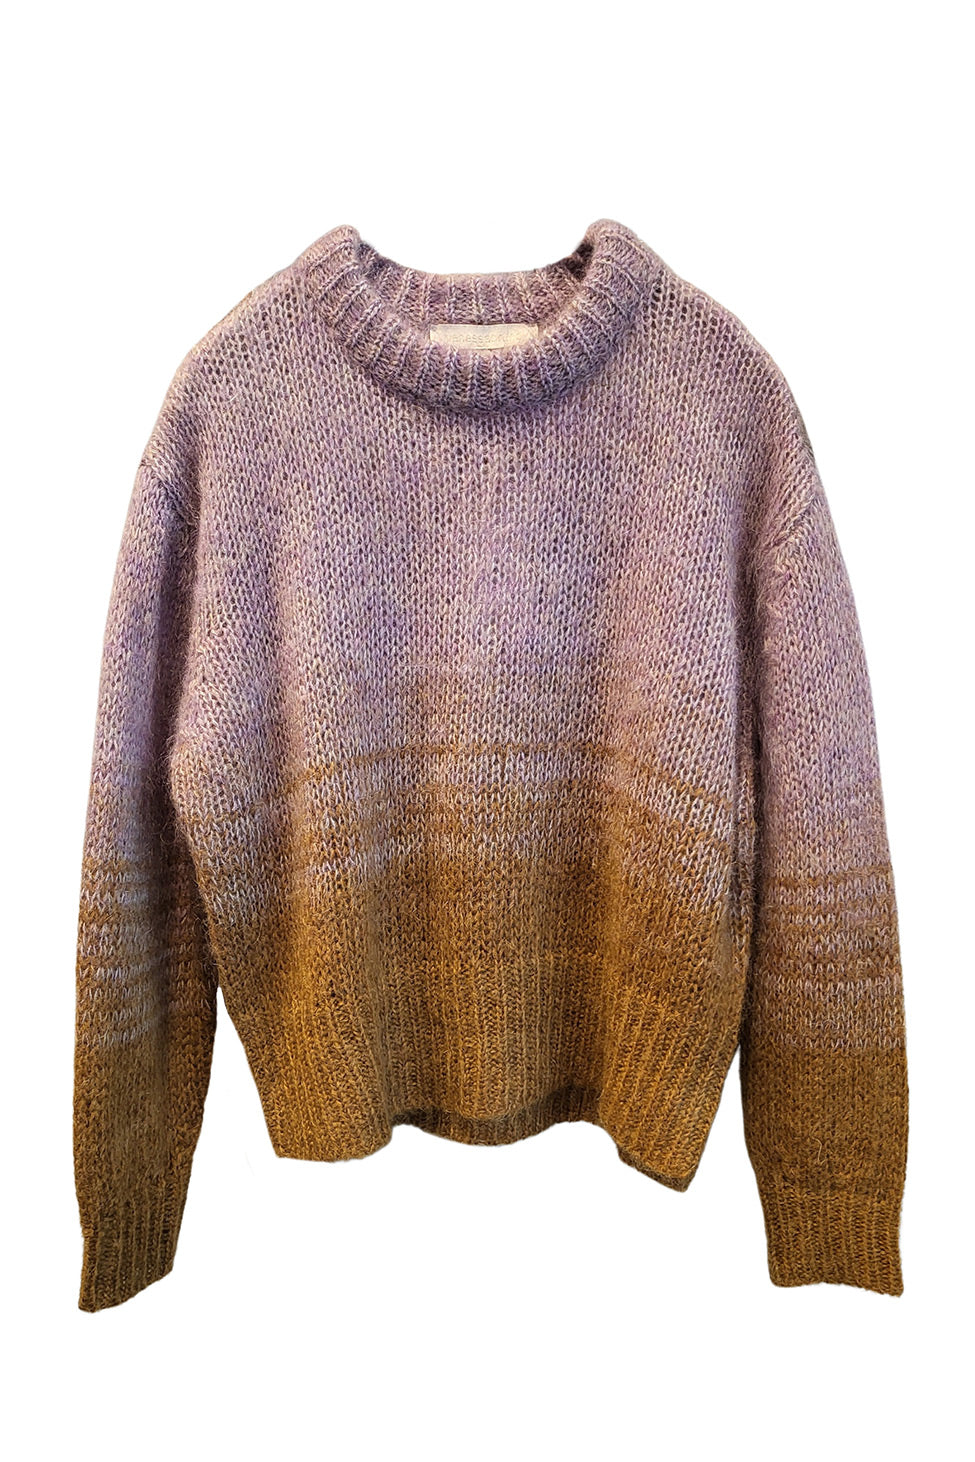 Pandura Sweater